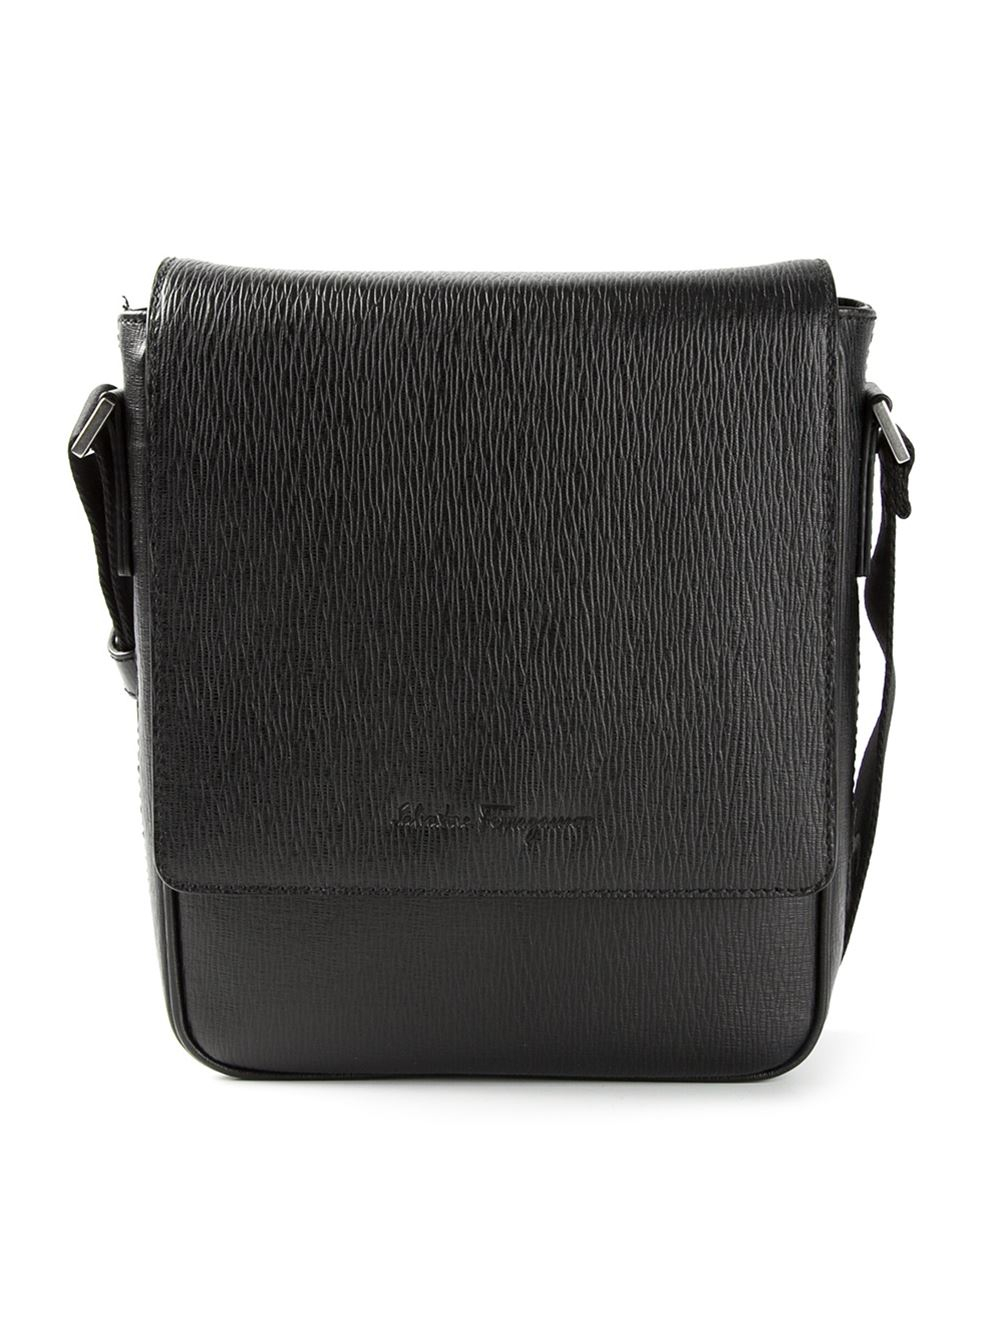 Ferragamo Messenger Bag in Black for Men | Lyst